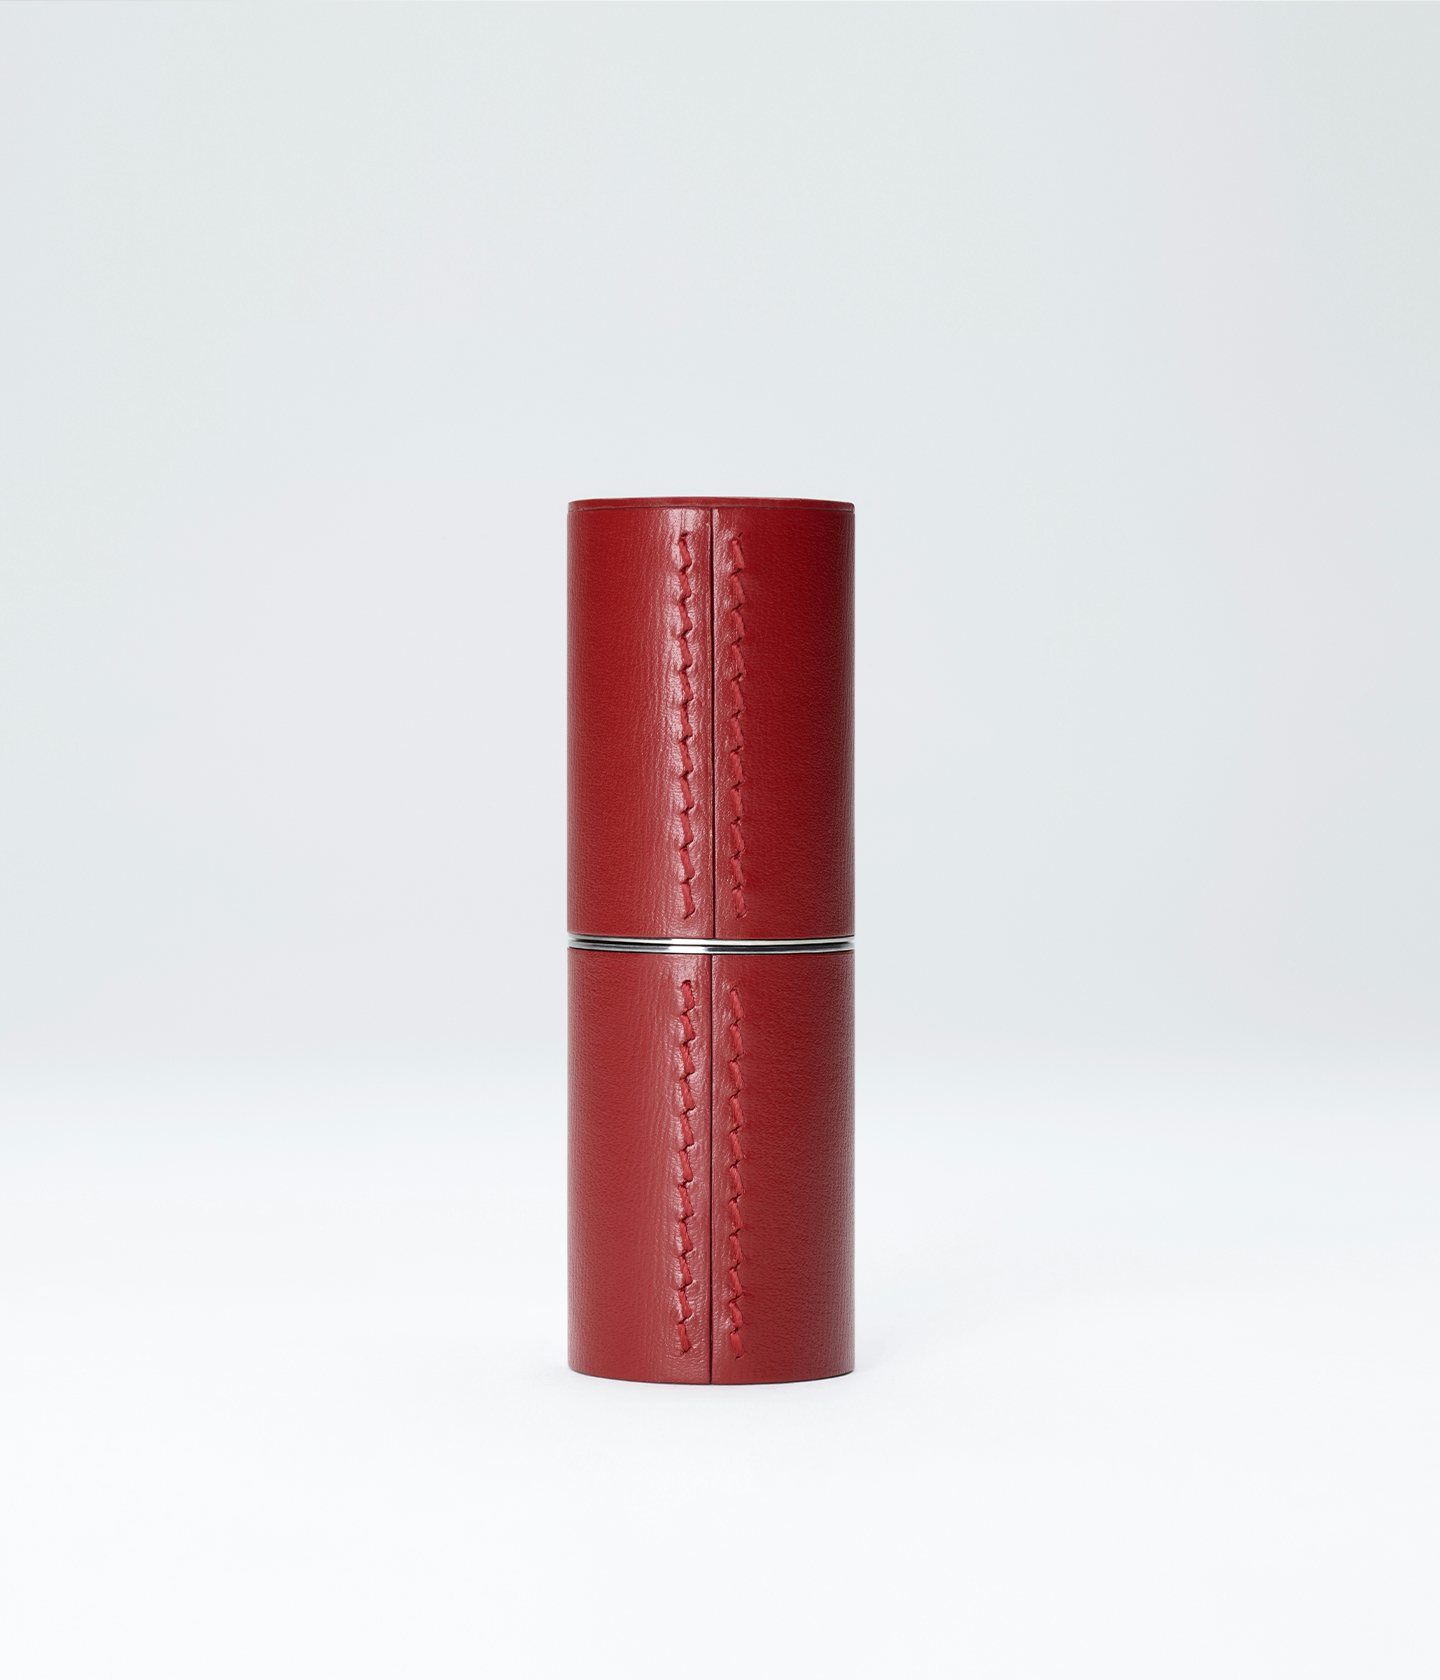 La bouche rouge, Paris red fine leather lipstick case